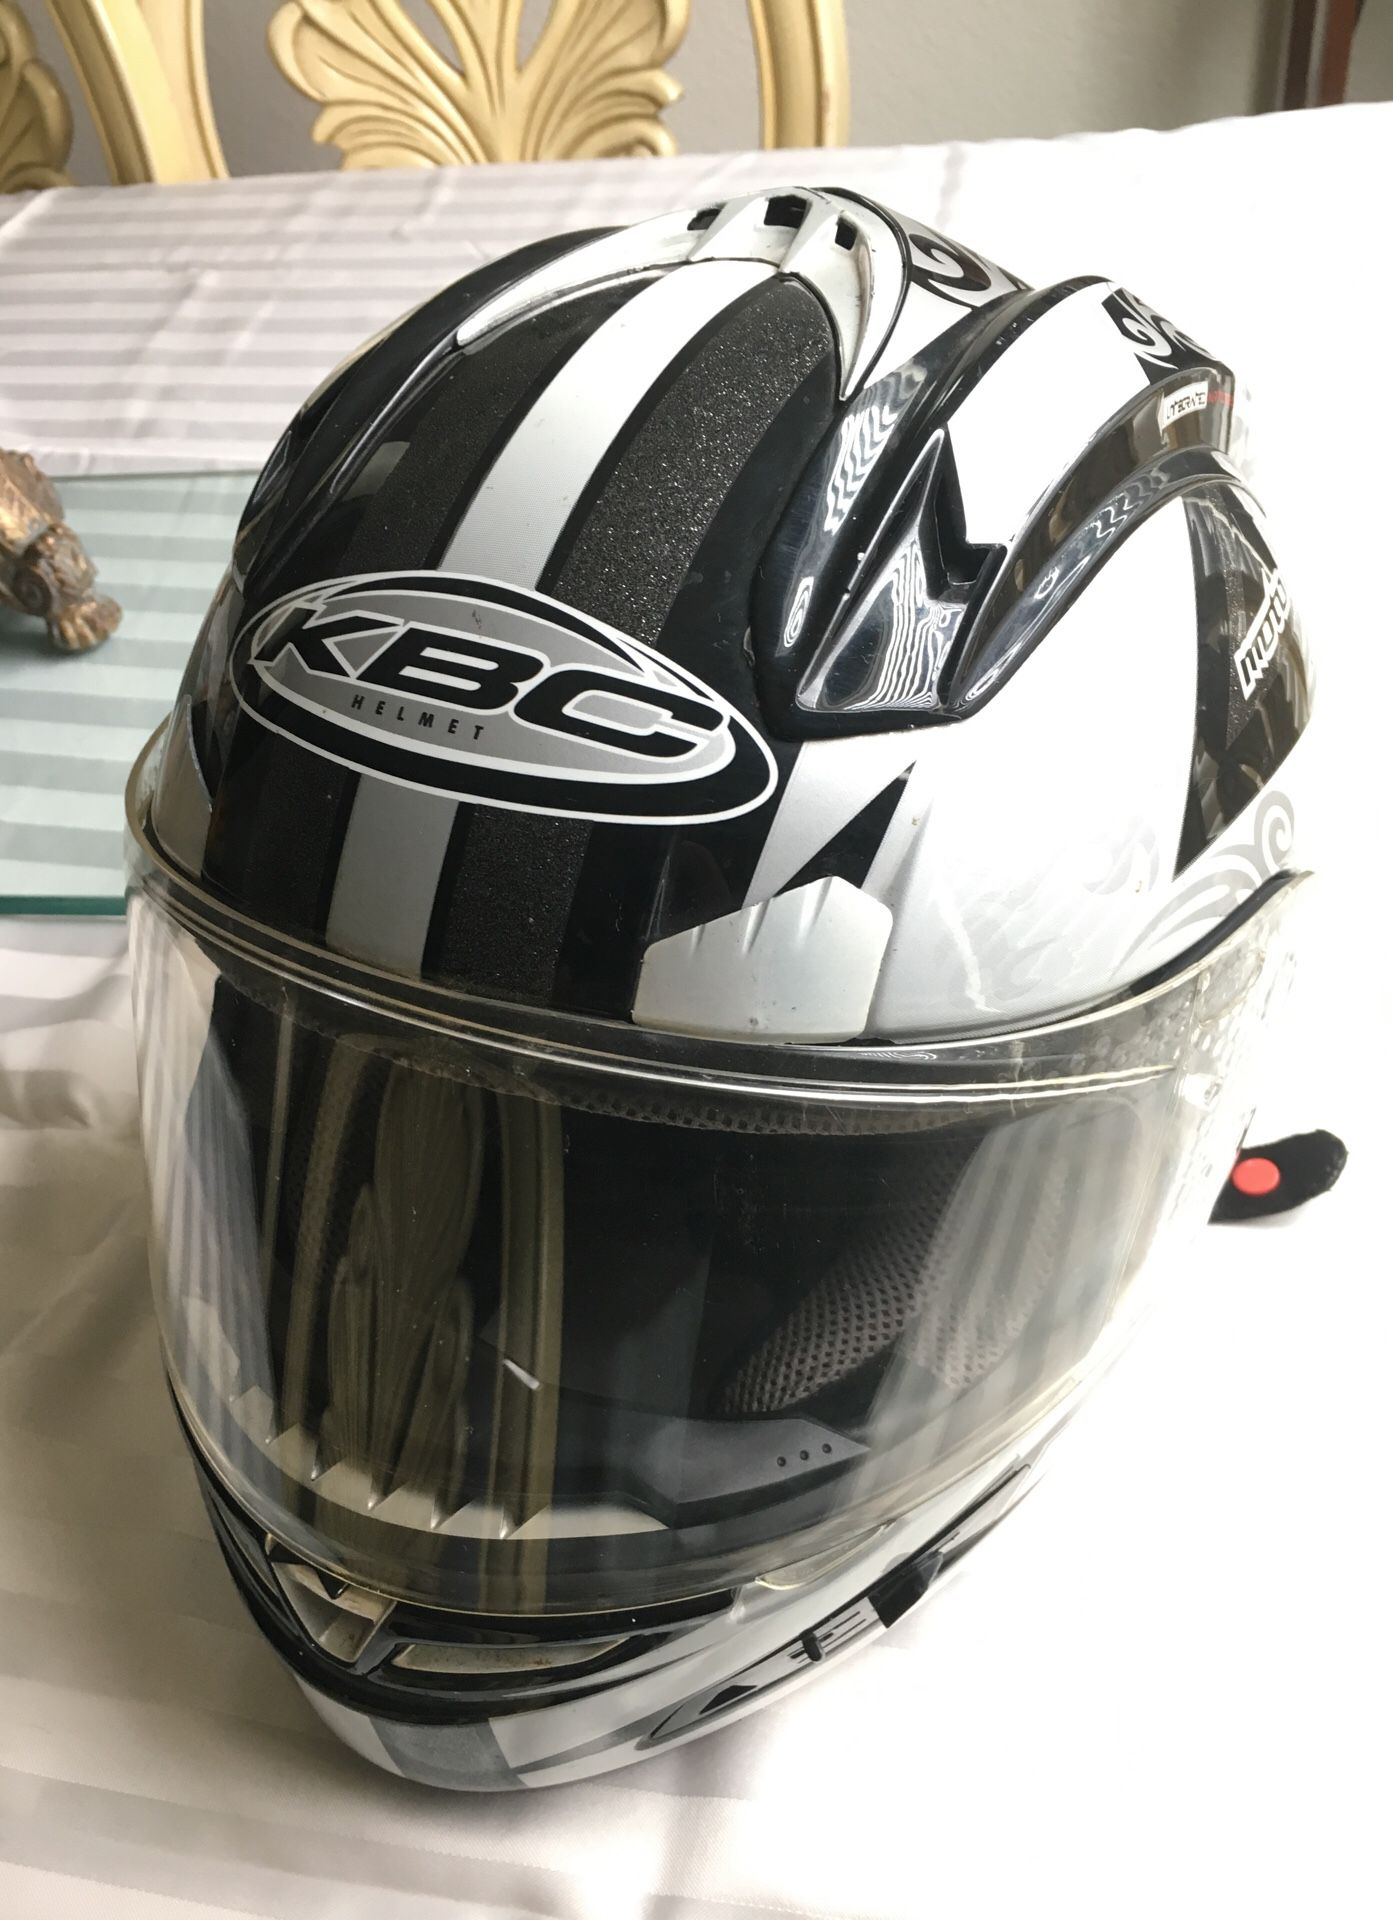 KBC Helmet Sale San Antonio, TX - OfferUp